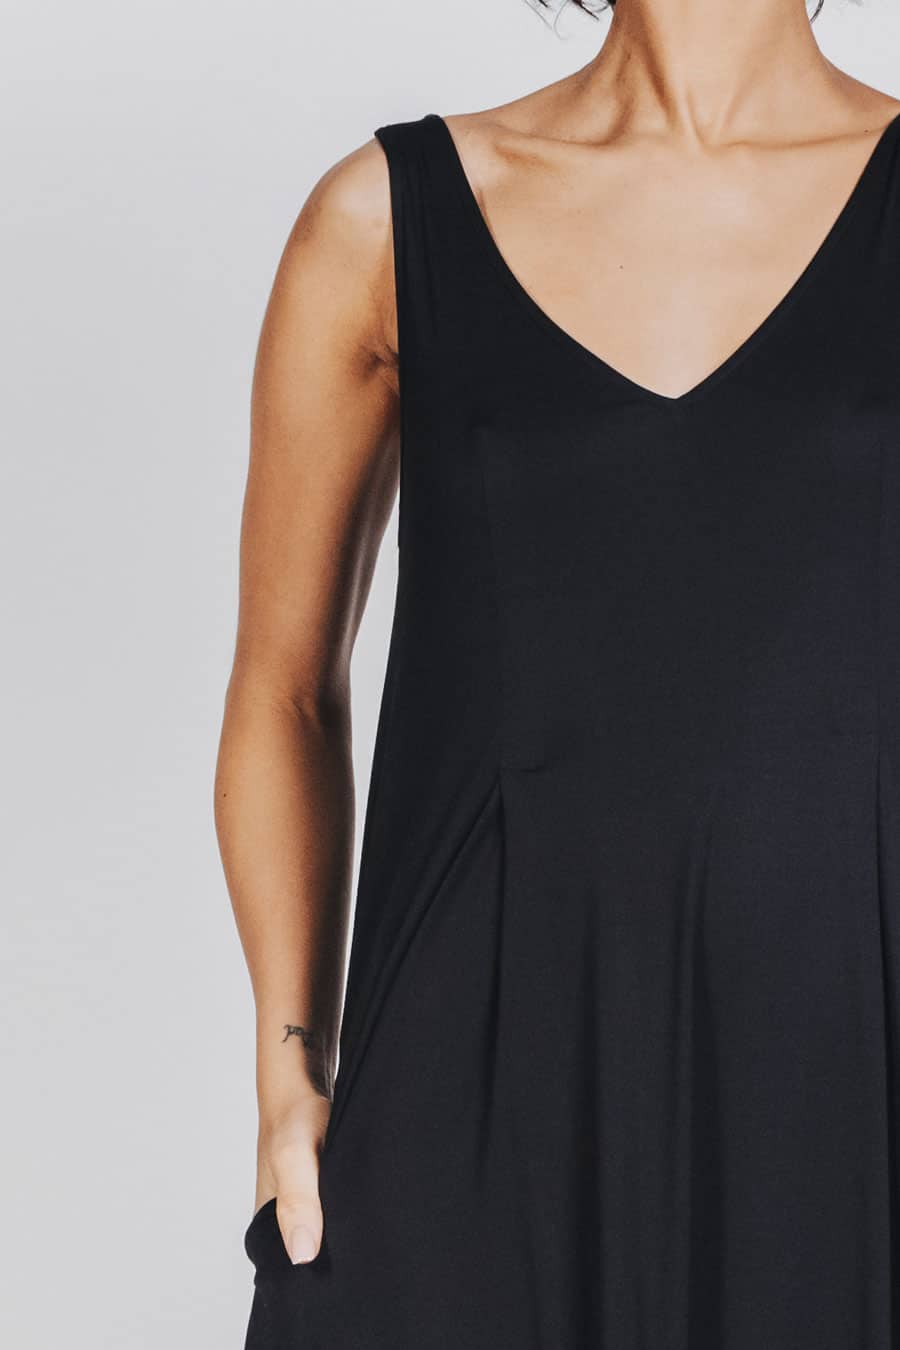 Deep White Black Modell SASHA langes Kleid schwarz, ärmelloses Sommerkleid mit V-Ausschnitt, Ansicht Detail V-Ausschnitt von vorne